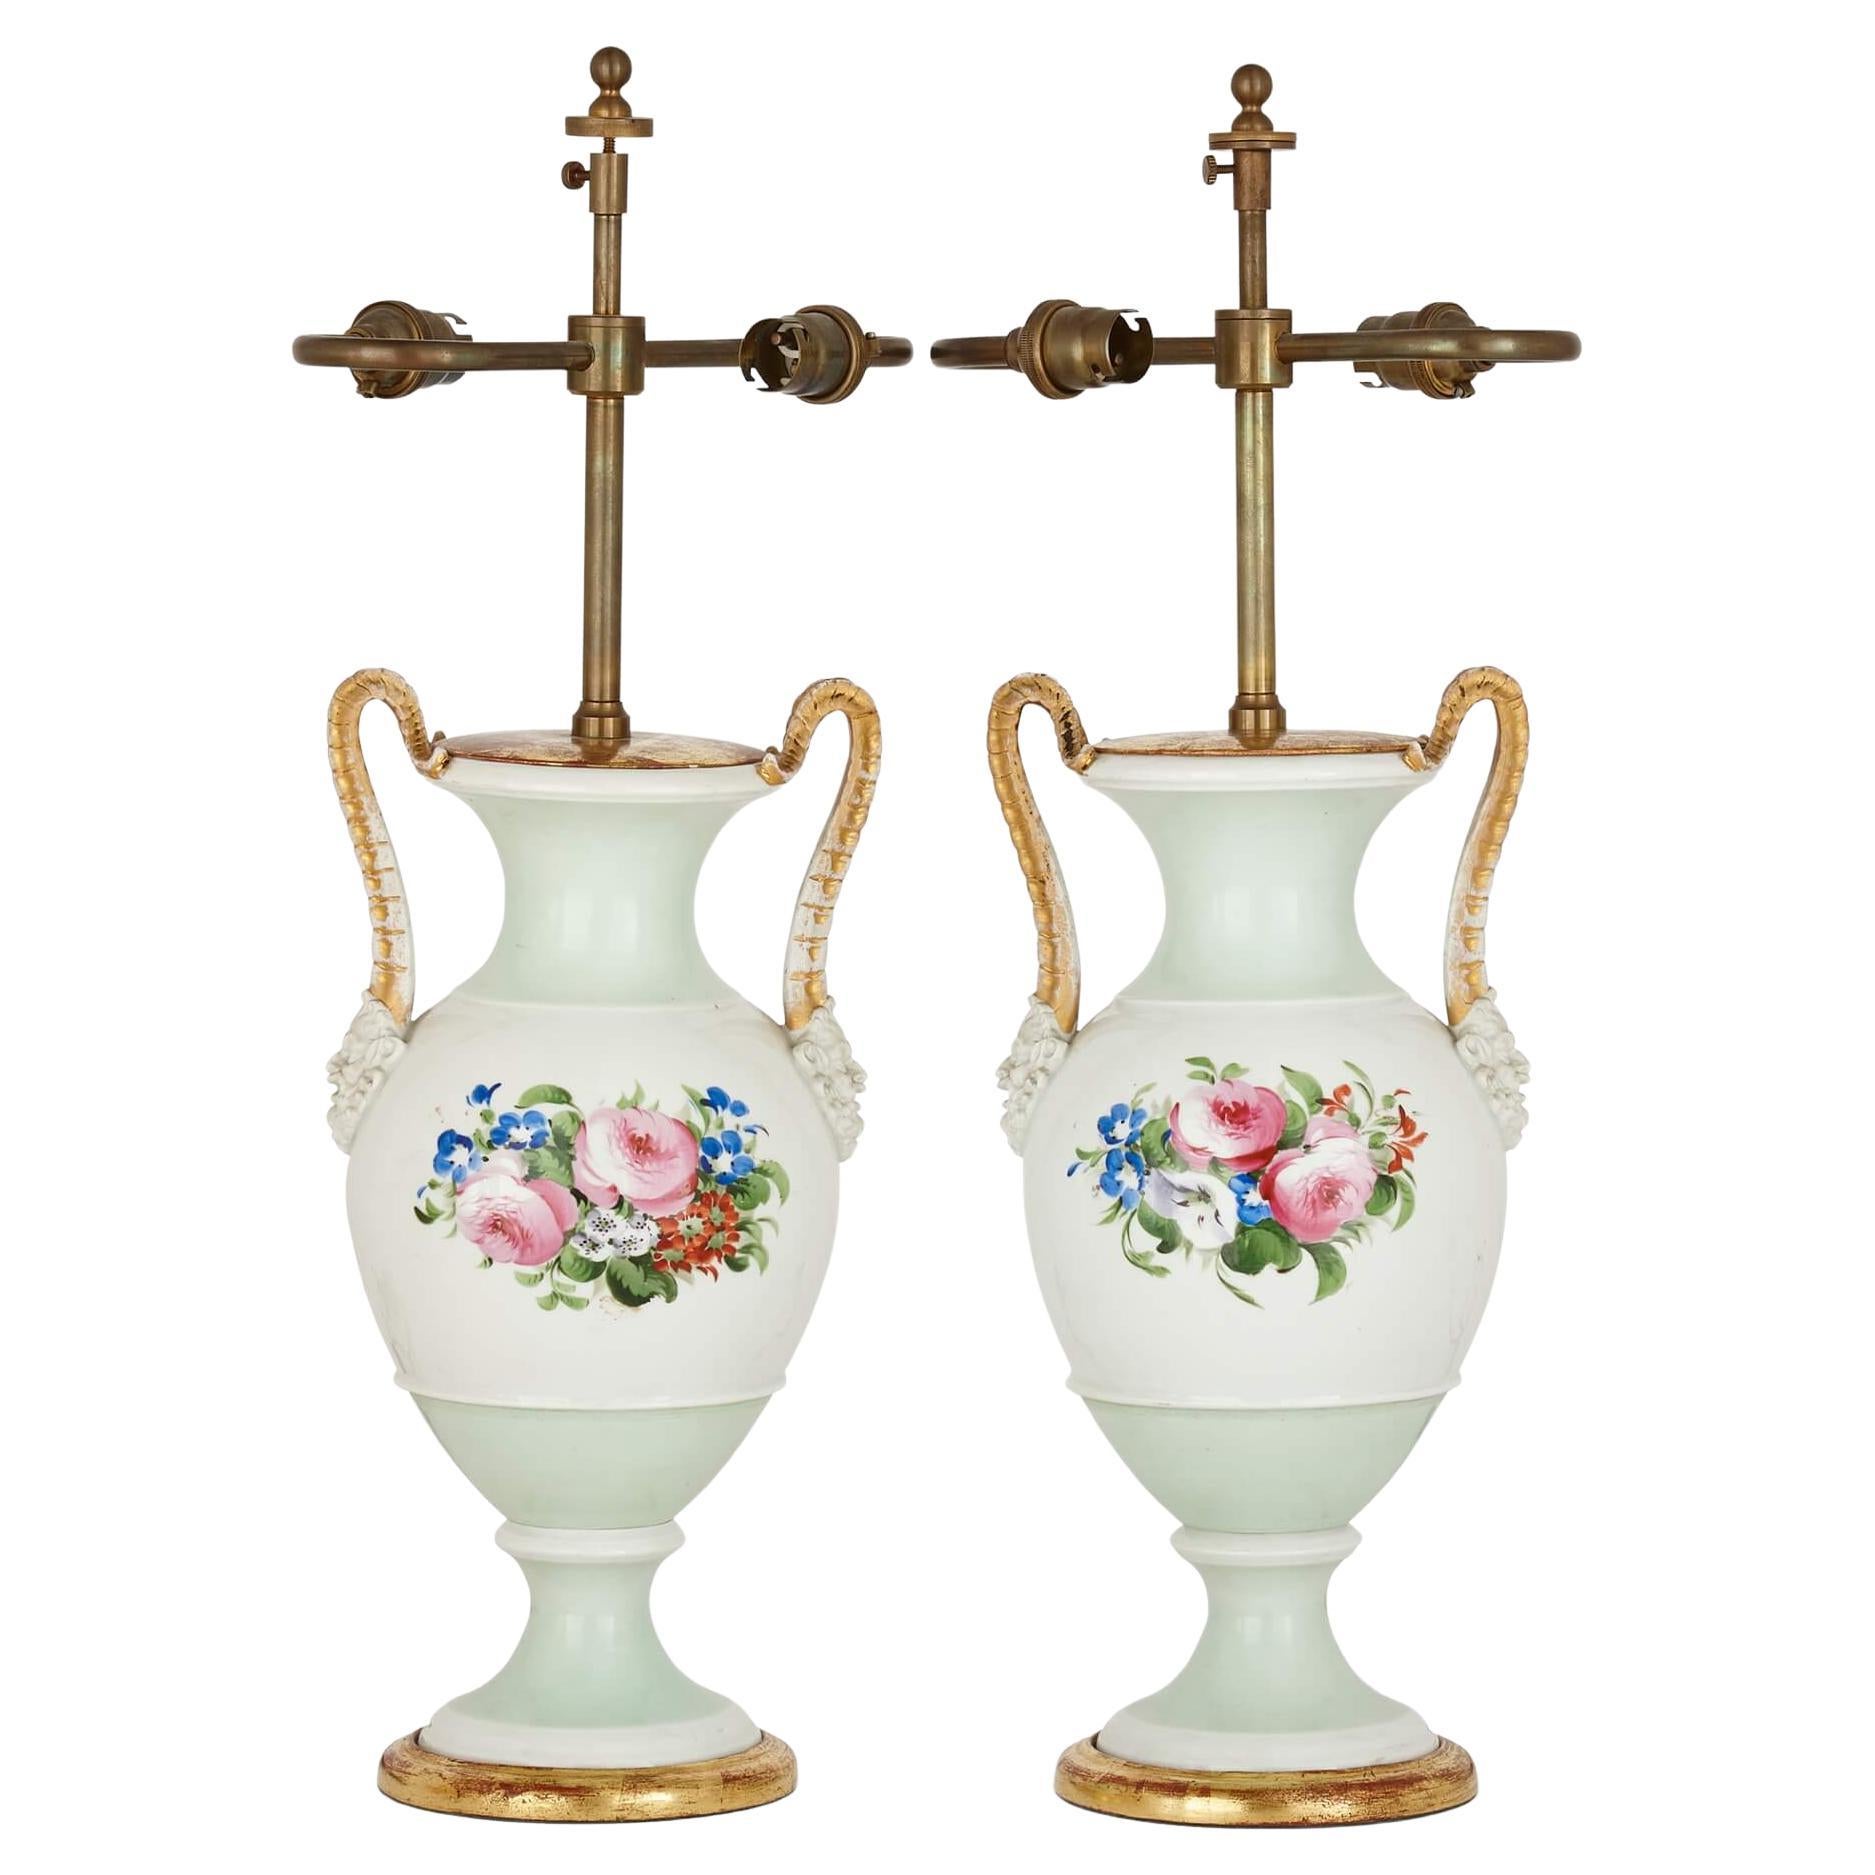 Pair of Antique Porcelain Vase-Form Lamps with Floral Decoration